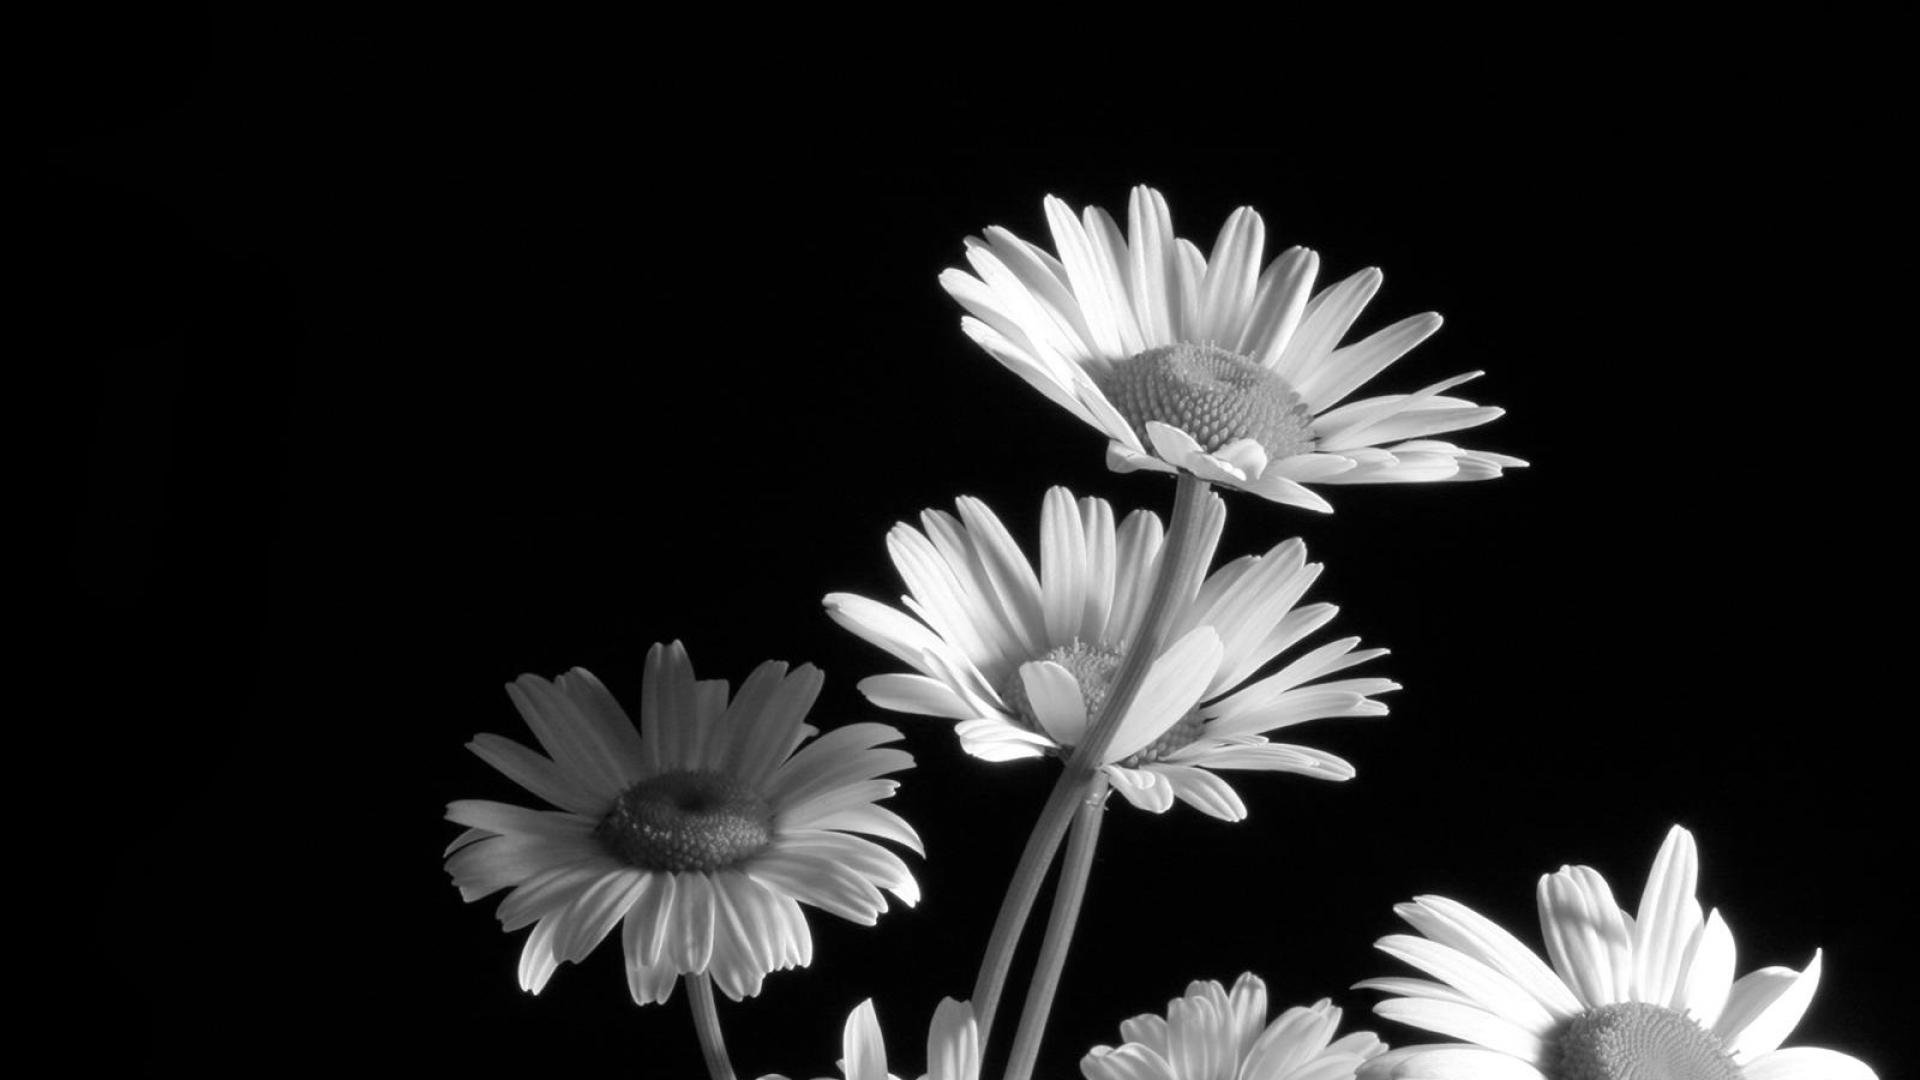 Black And White Flower Wallpaper